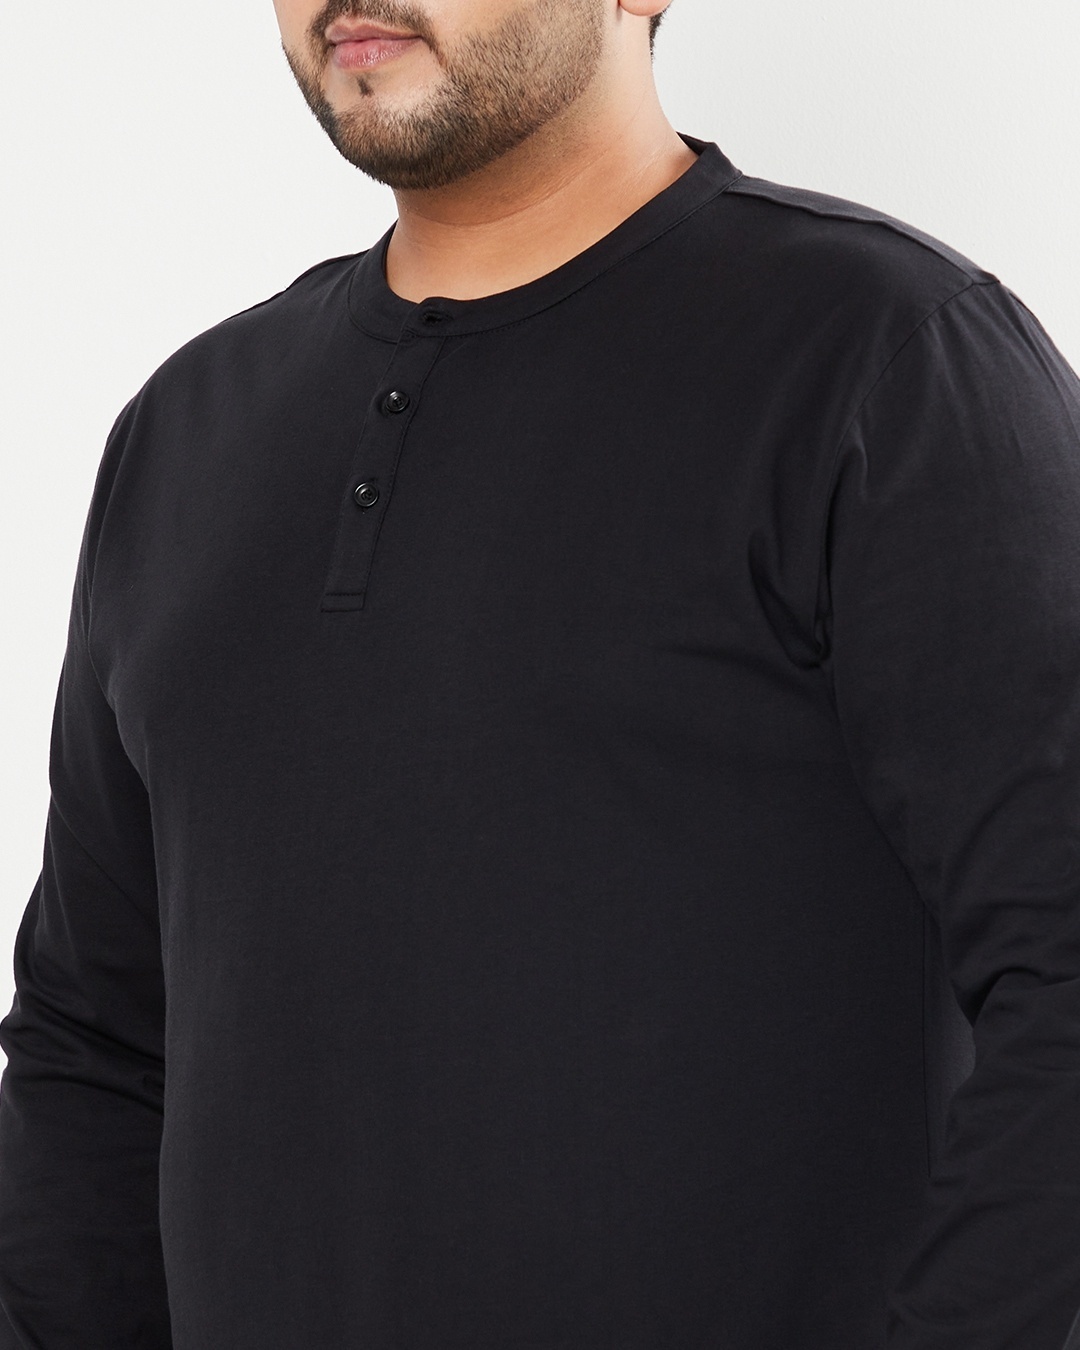 Shop Men's Black Plus Size Henley T-shirt